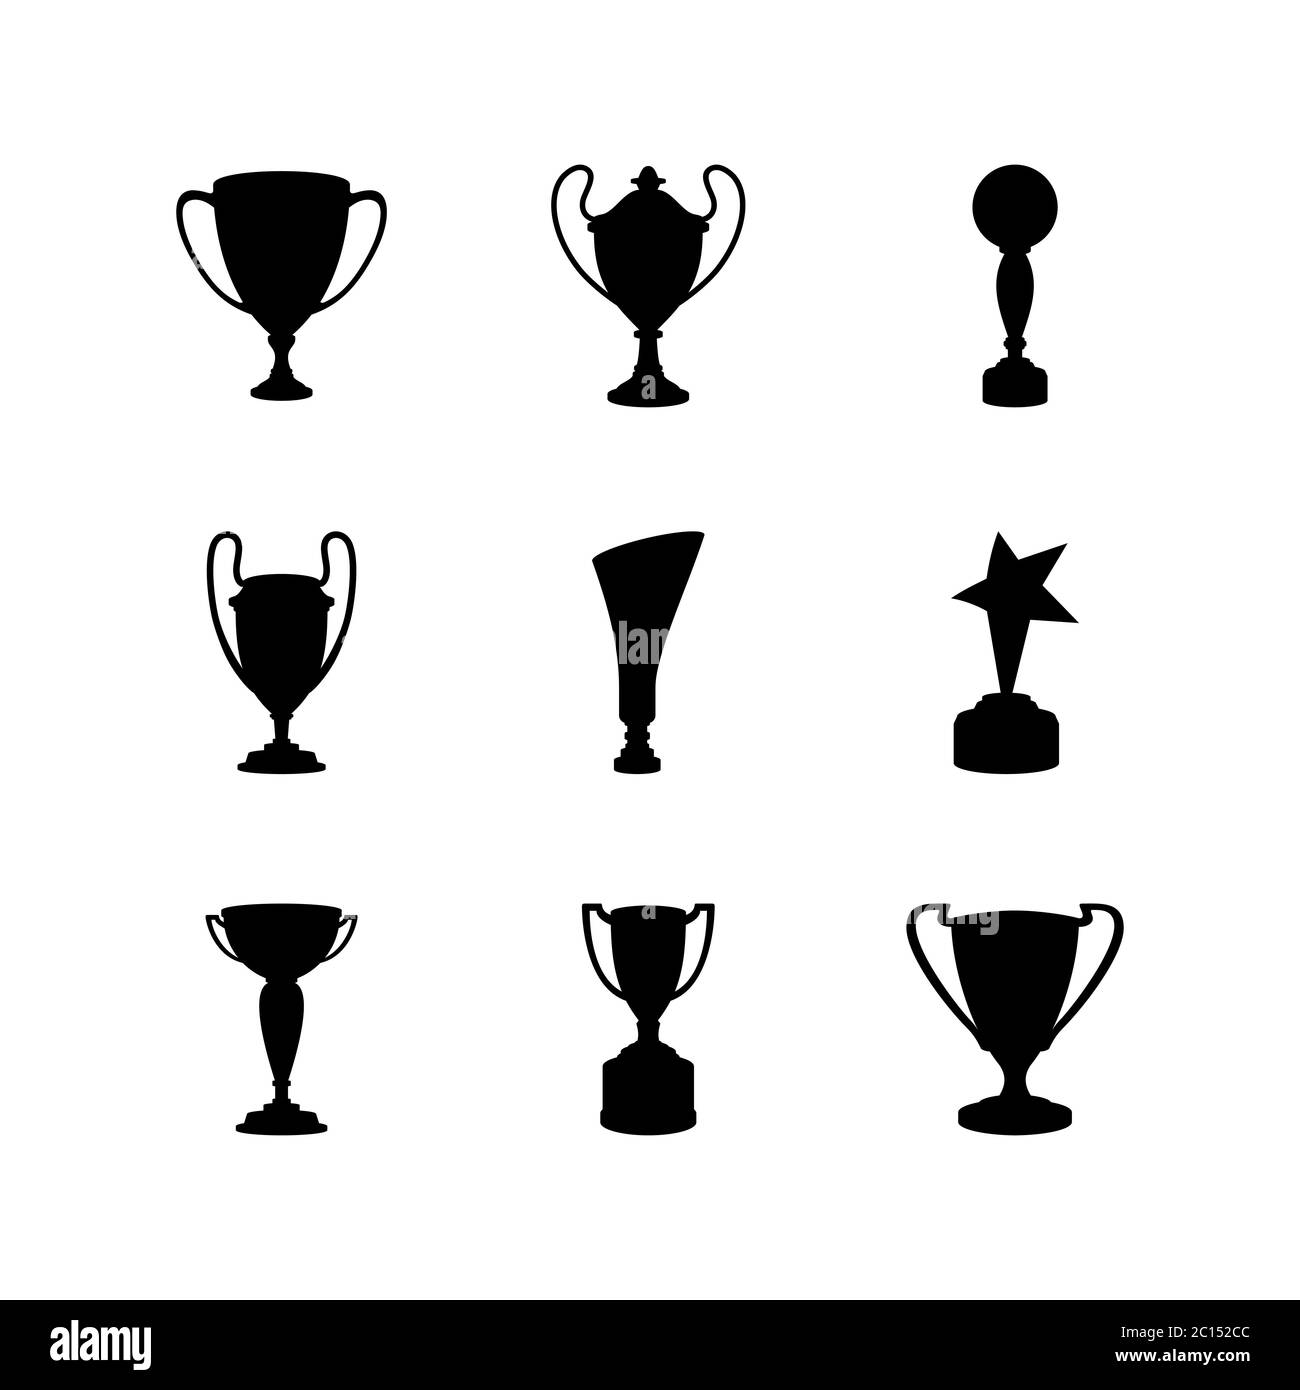 Silhouetten verschiedener Trophäenvarianten für den Sieger einer Meisterschaft. Pokaldesign als Champion-Auszeichnung. Stock Vektor